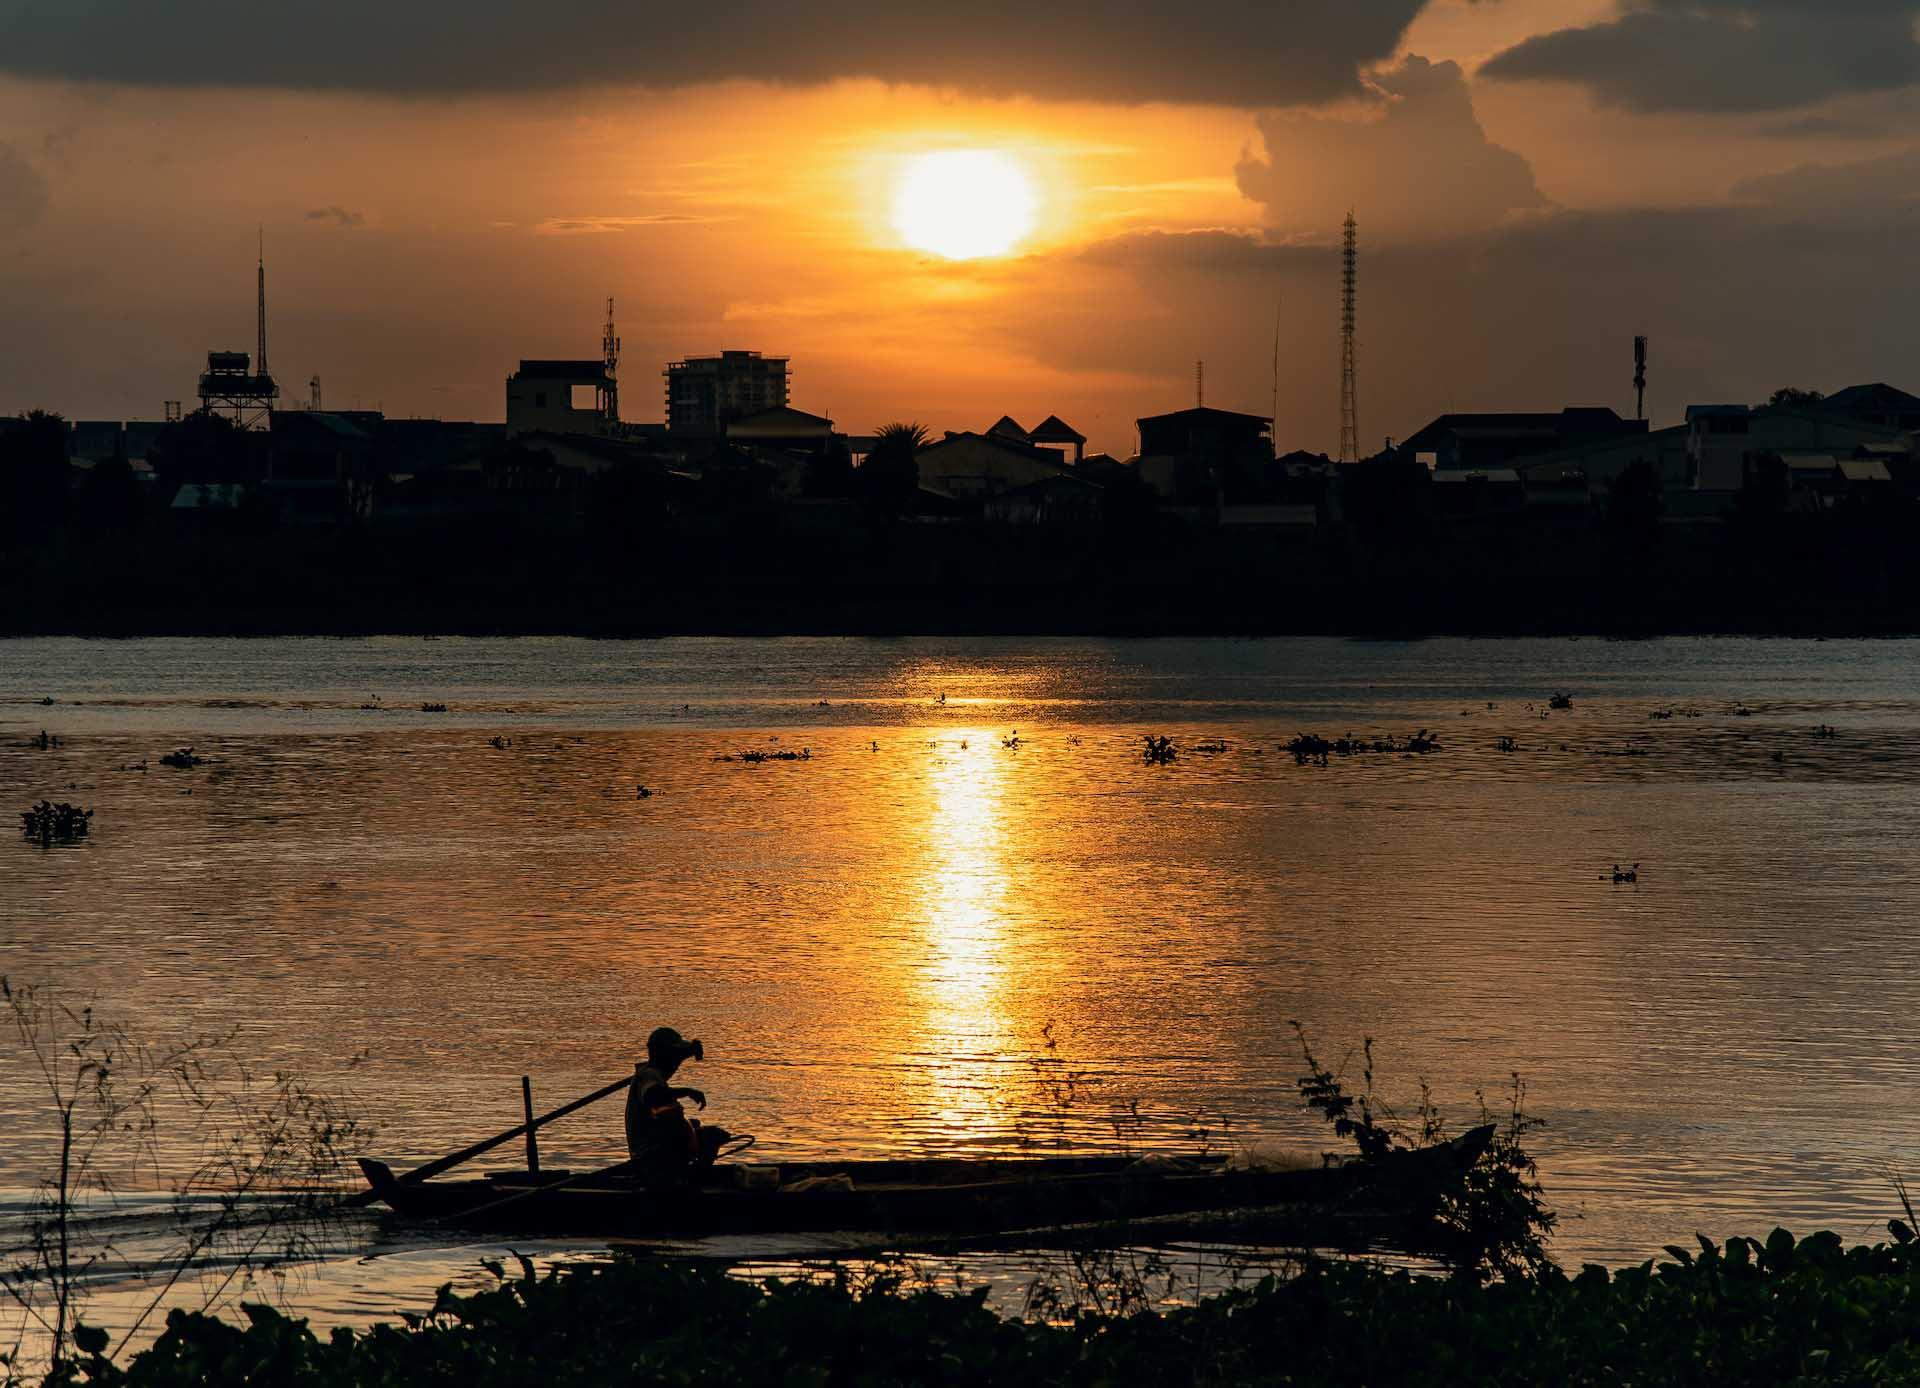 Une croisière sur le Tonlé Sap pour admirer le soleil couchant sur la skyline de Koh Pich © Roth Chanvirak